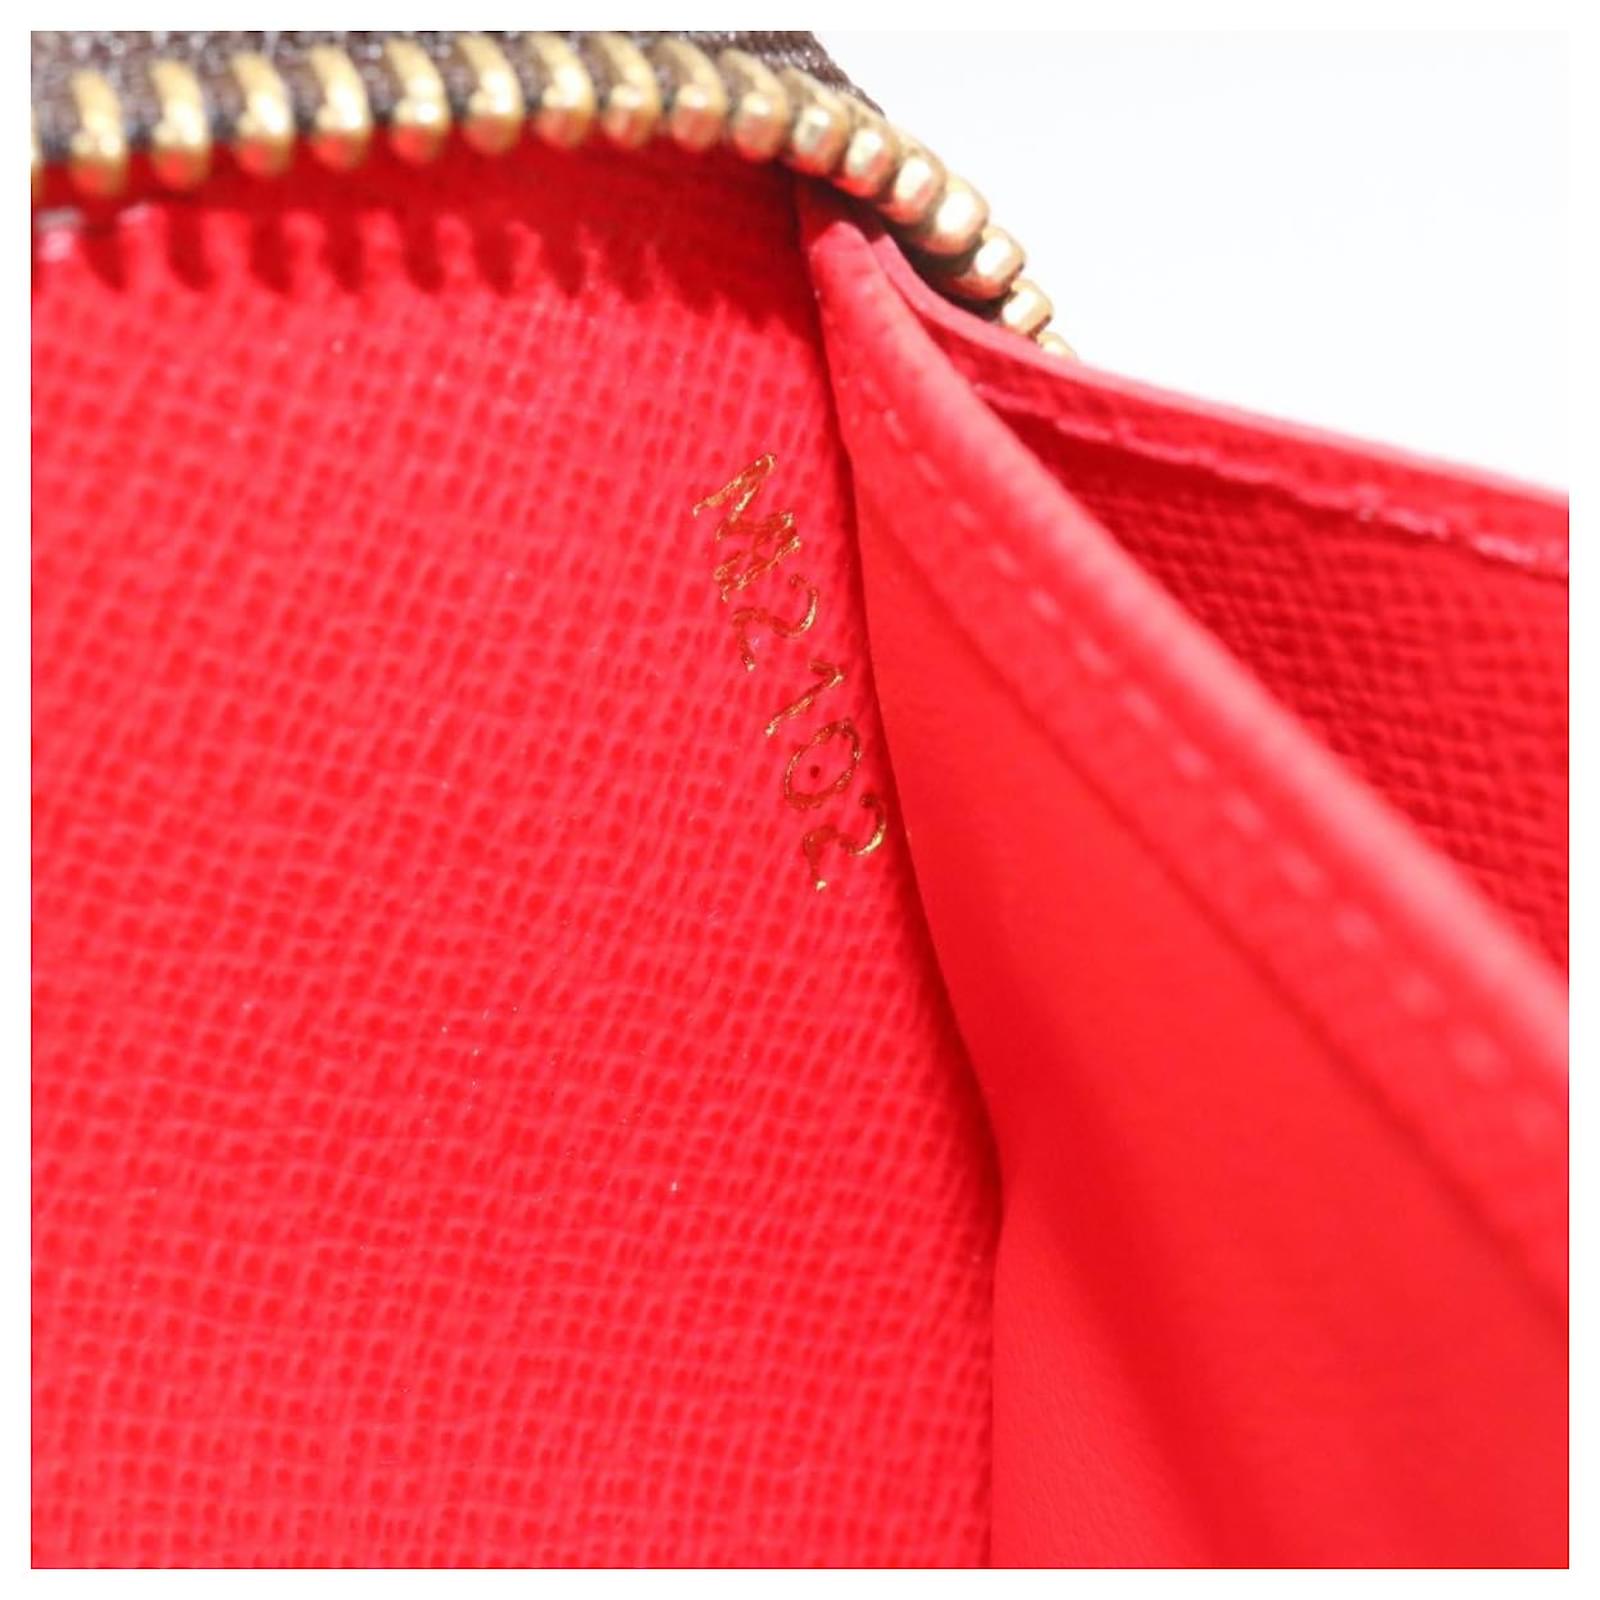 Louis Vuitton Monogramm Yayoi Kusama Dots Zippy red M60450 Cotton